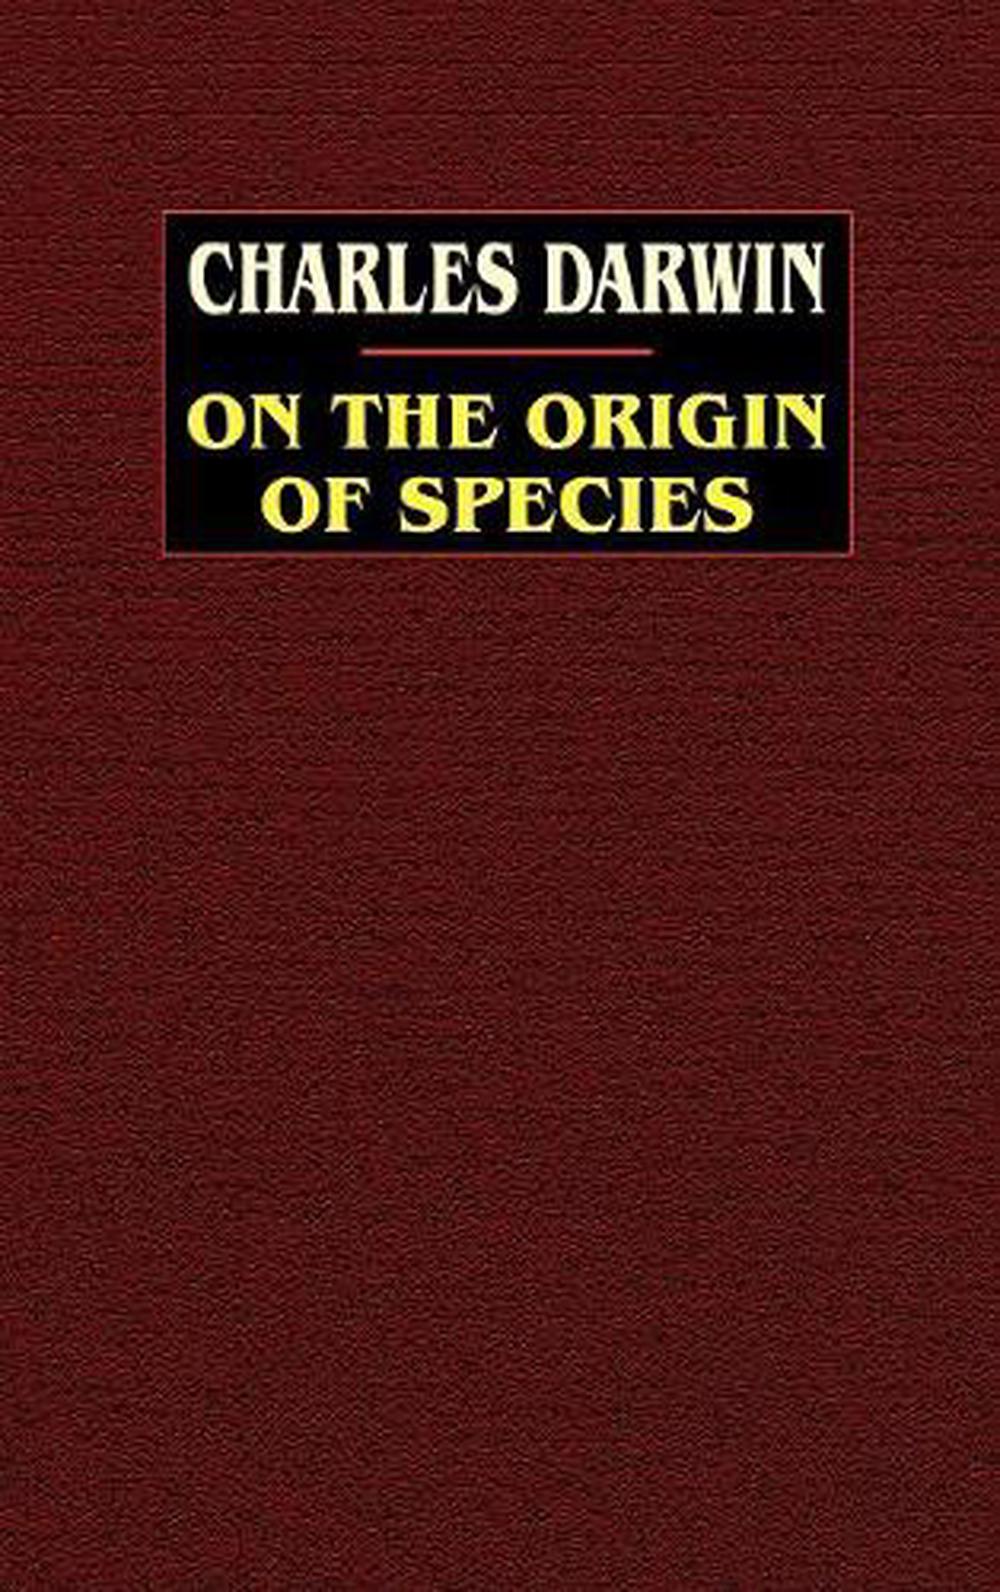 origin of species